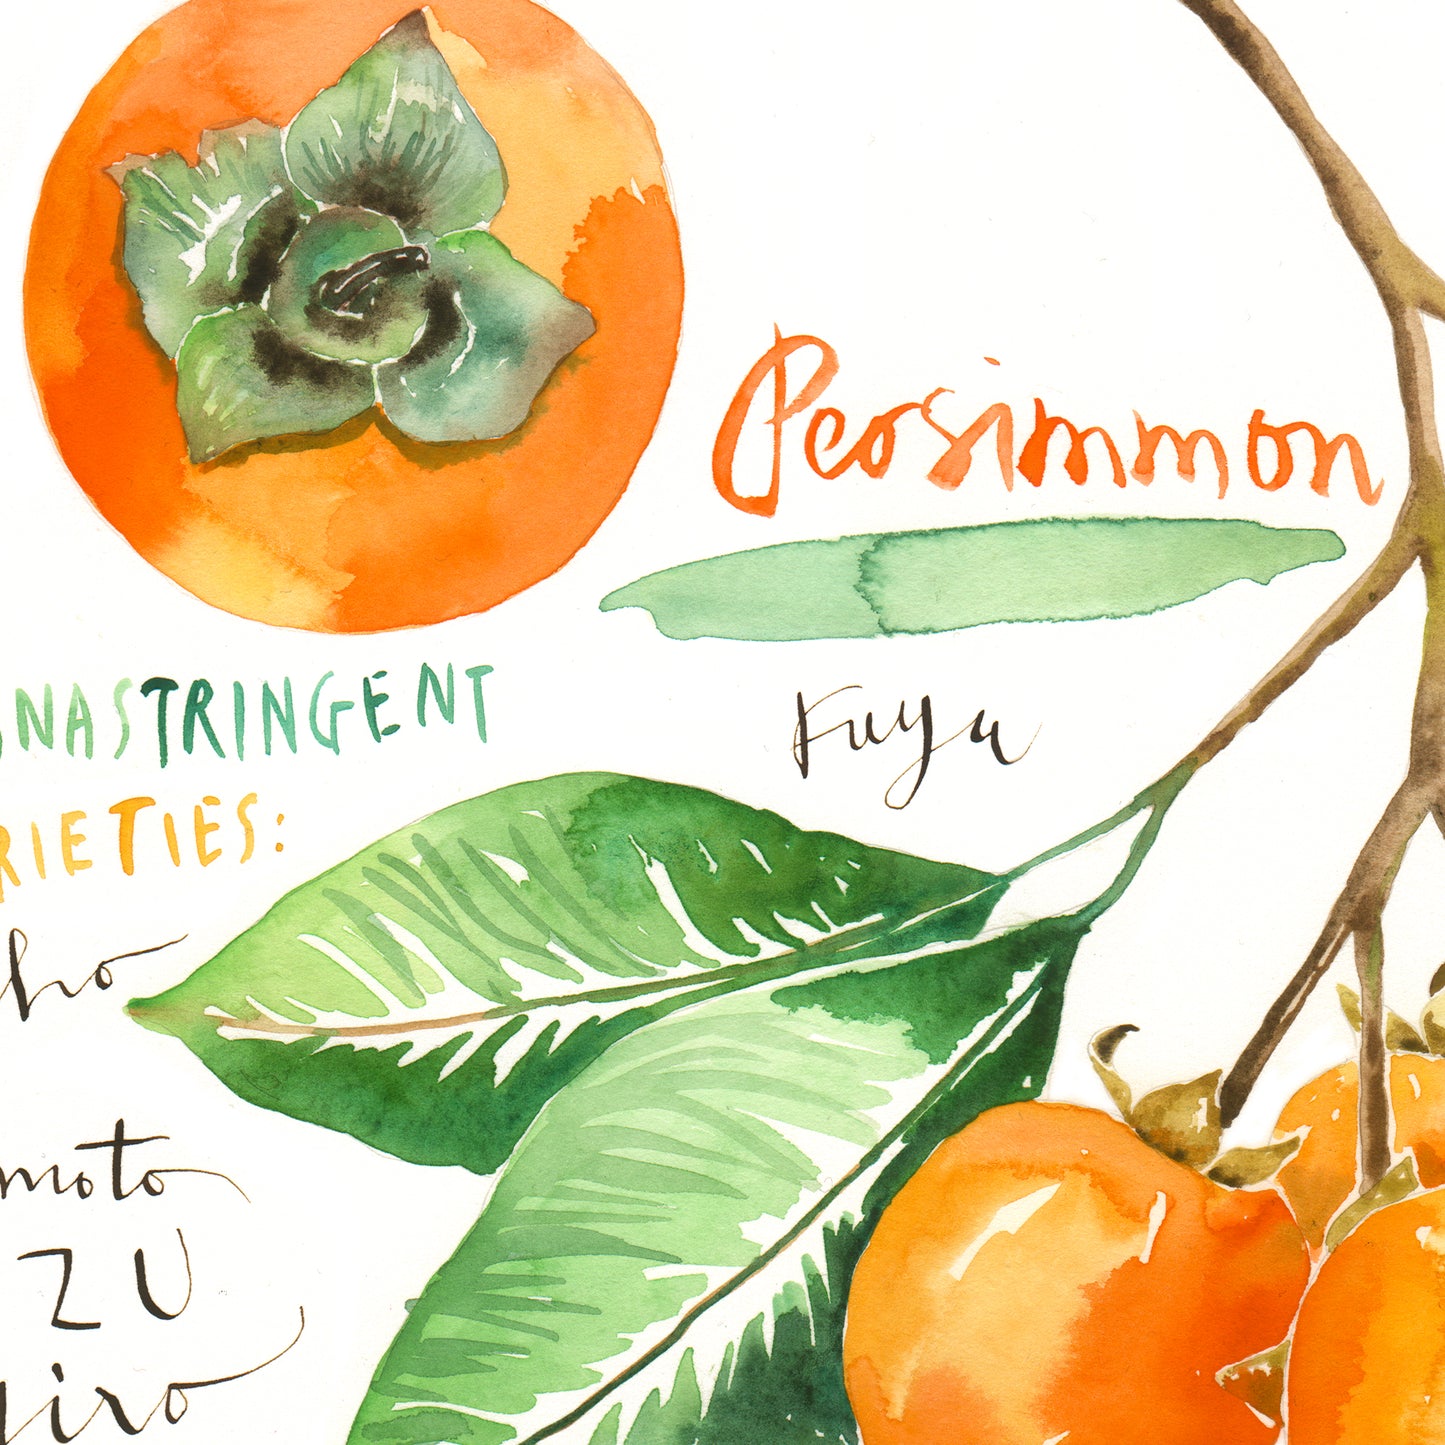 Persimmon varieties